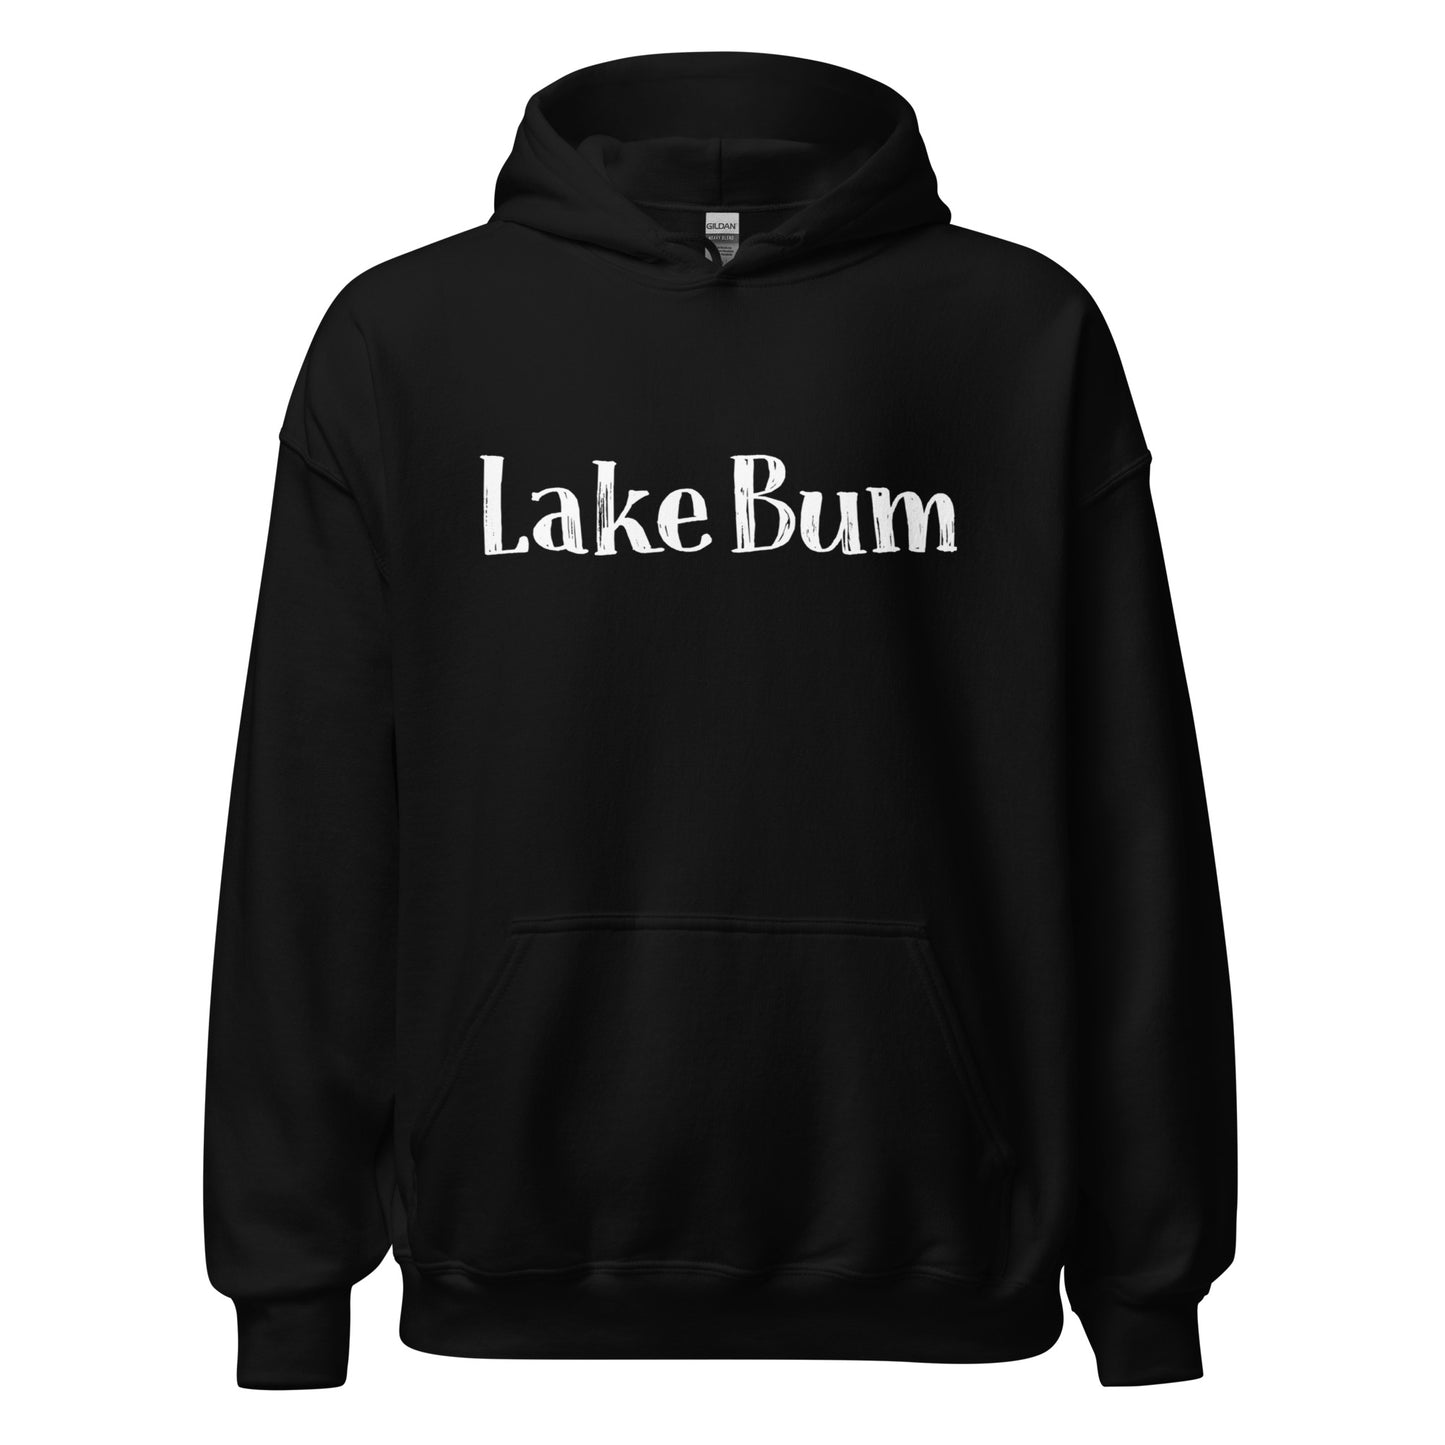 Lake Bum Unisex Hoodie Sweatshirt